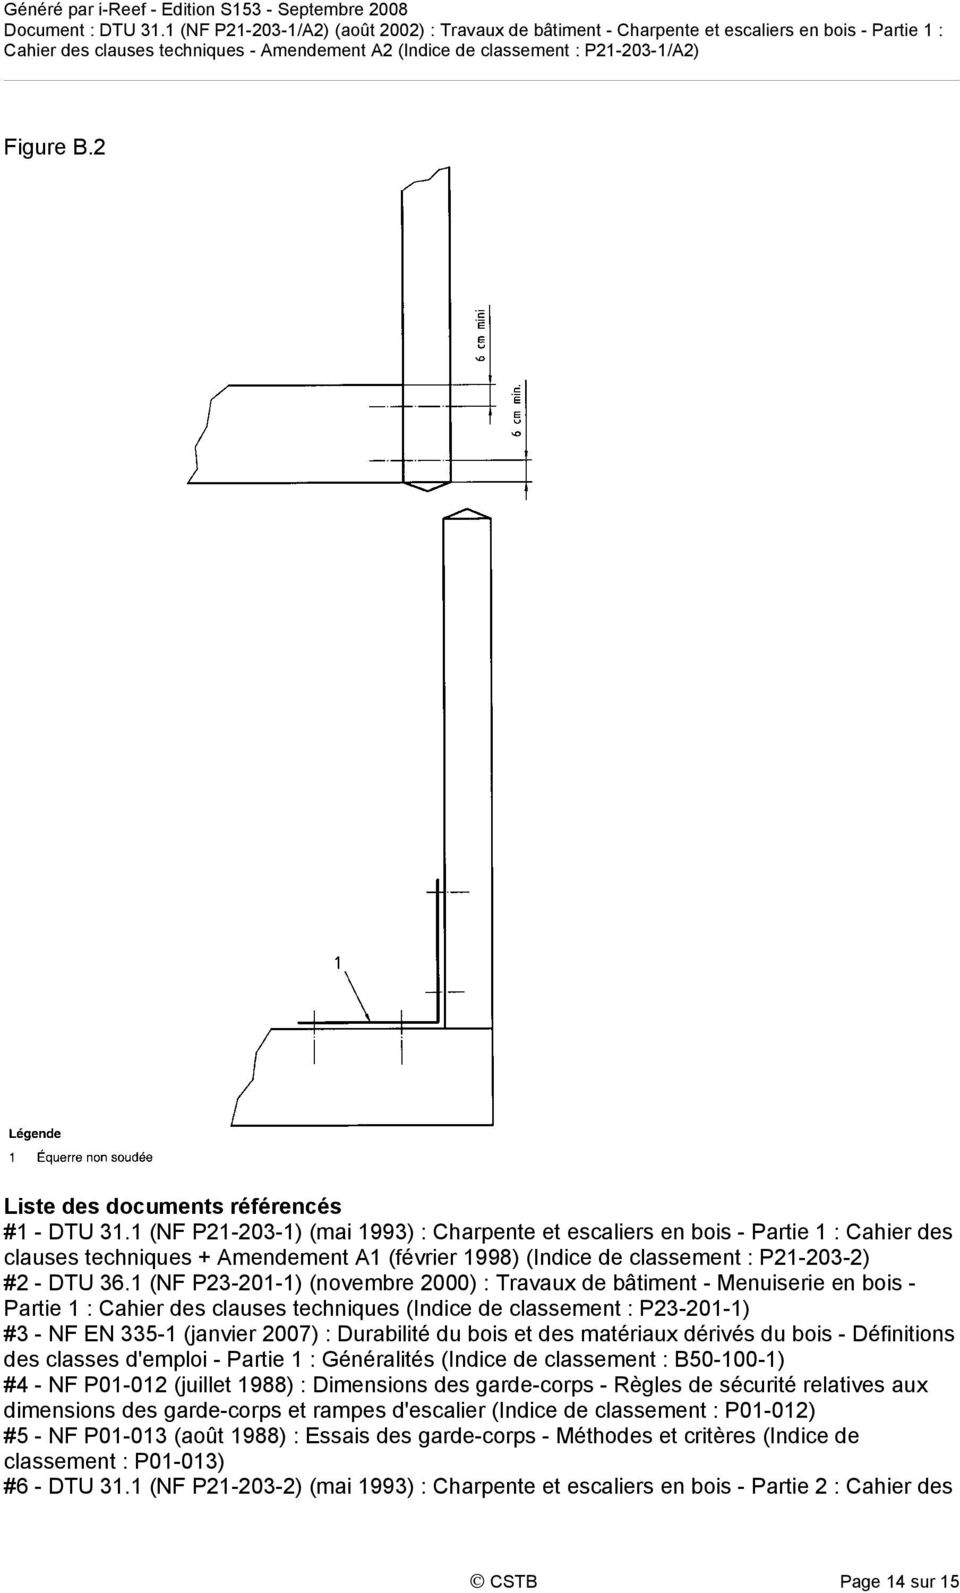 1 (NF P23-201-1) (novembre 2000) : Travaux de bâtiment - Menuiserie en bois - Partie 1 : Cahier des clauses techniques (Indice de classement : P23-201-1) #3 - NF EN 335-1 (janvier 2007) : Durabilité